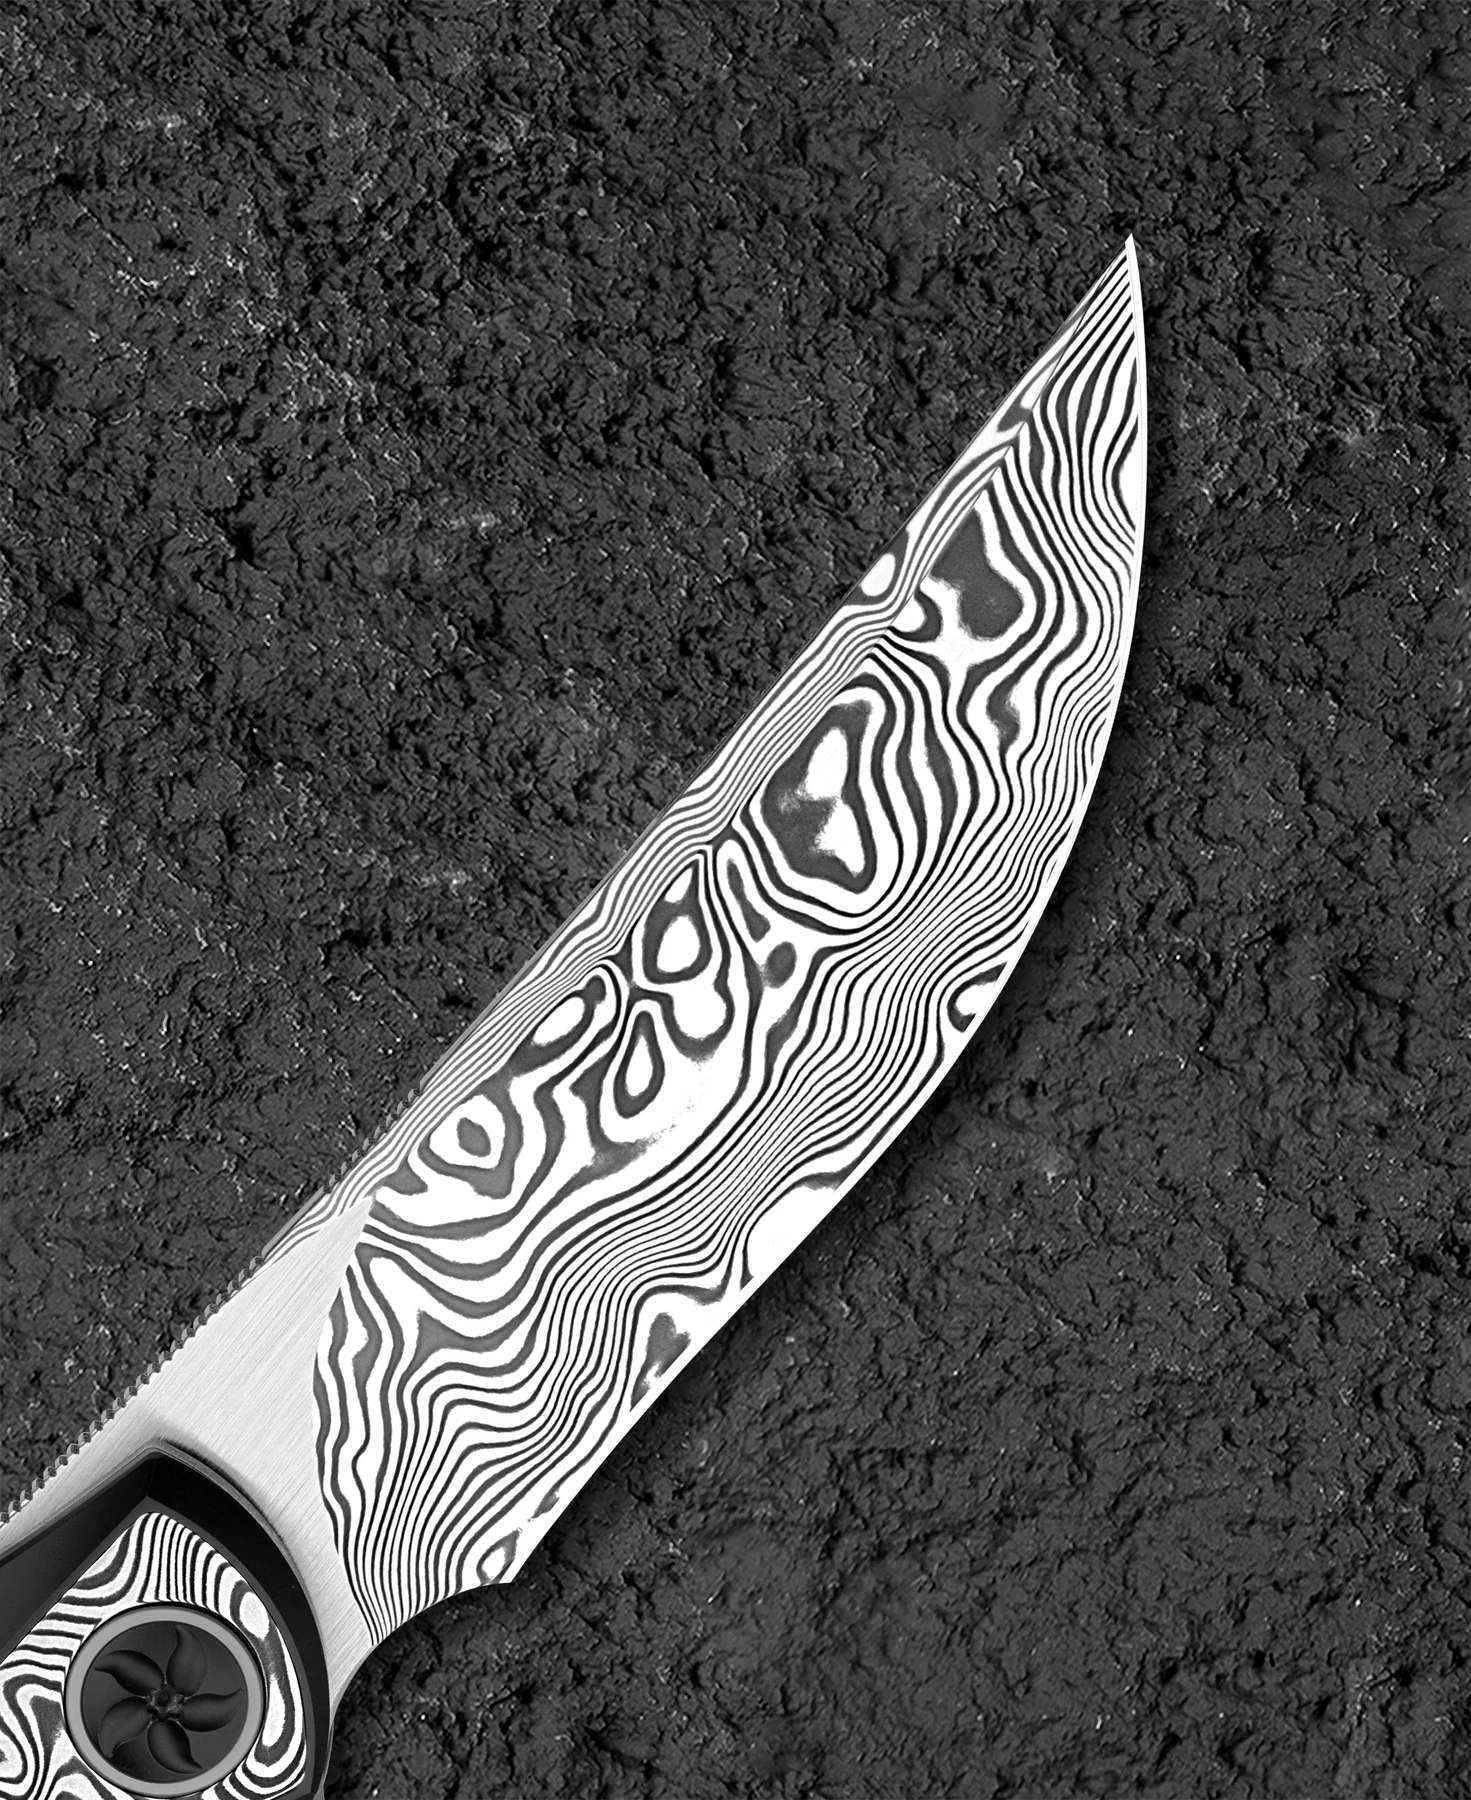 Bestech Sambac 大马士革钢 钛柄镶嵌大马士革钢柄 BT2402E 6360